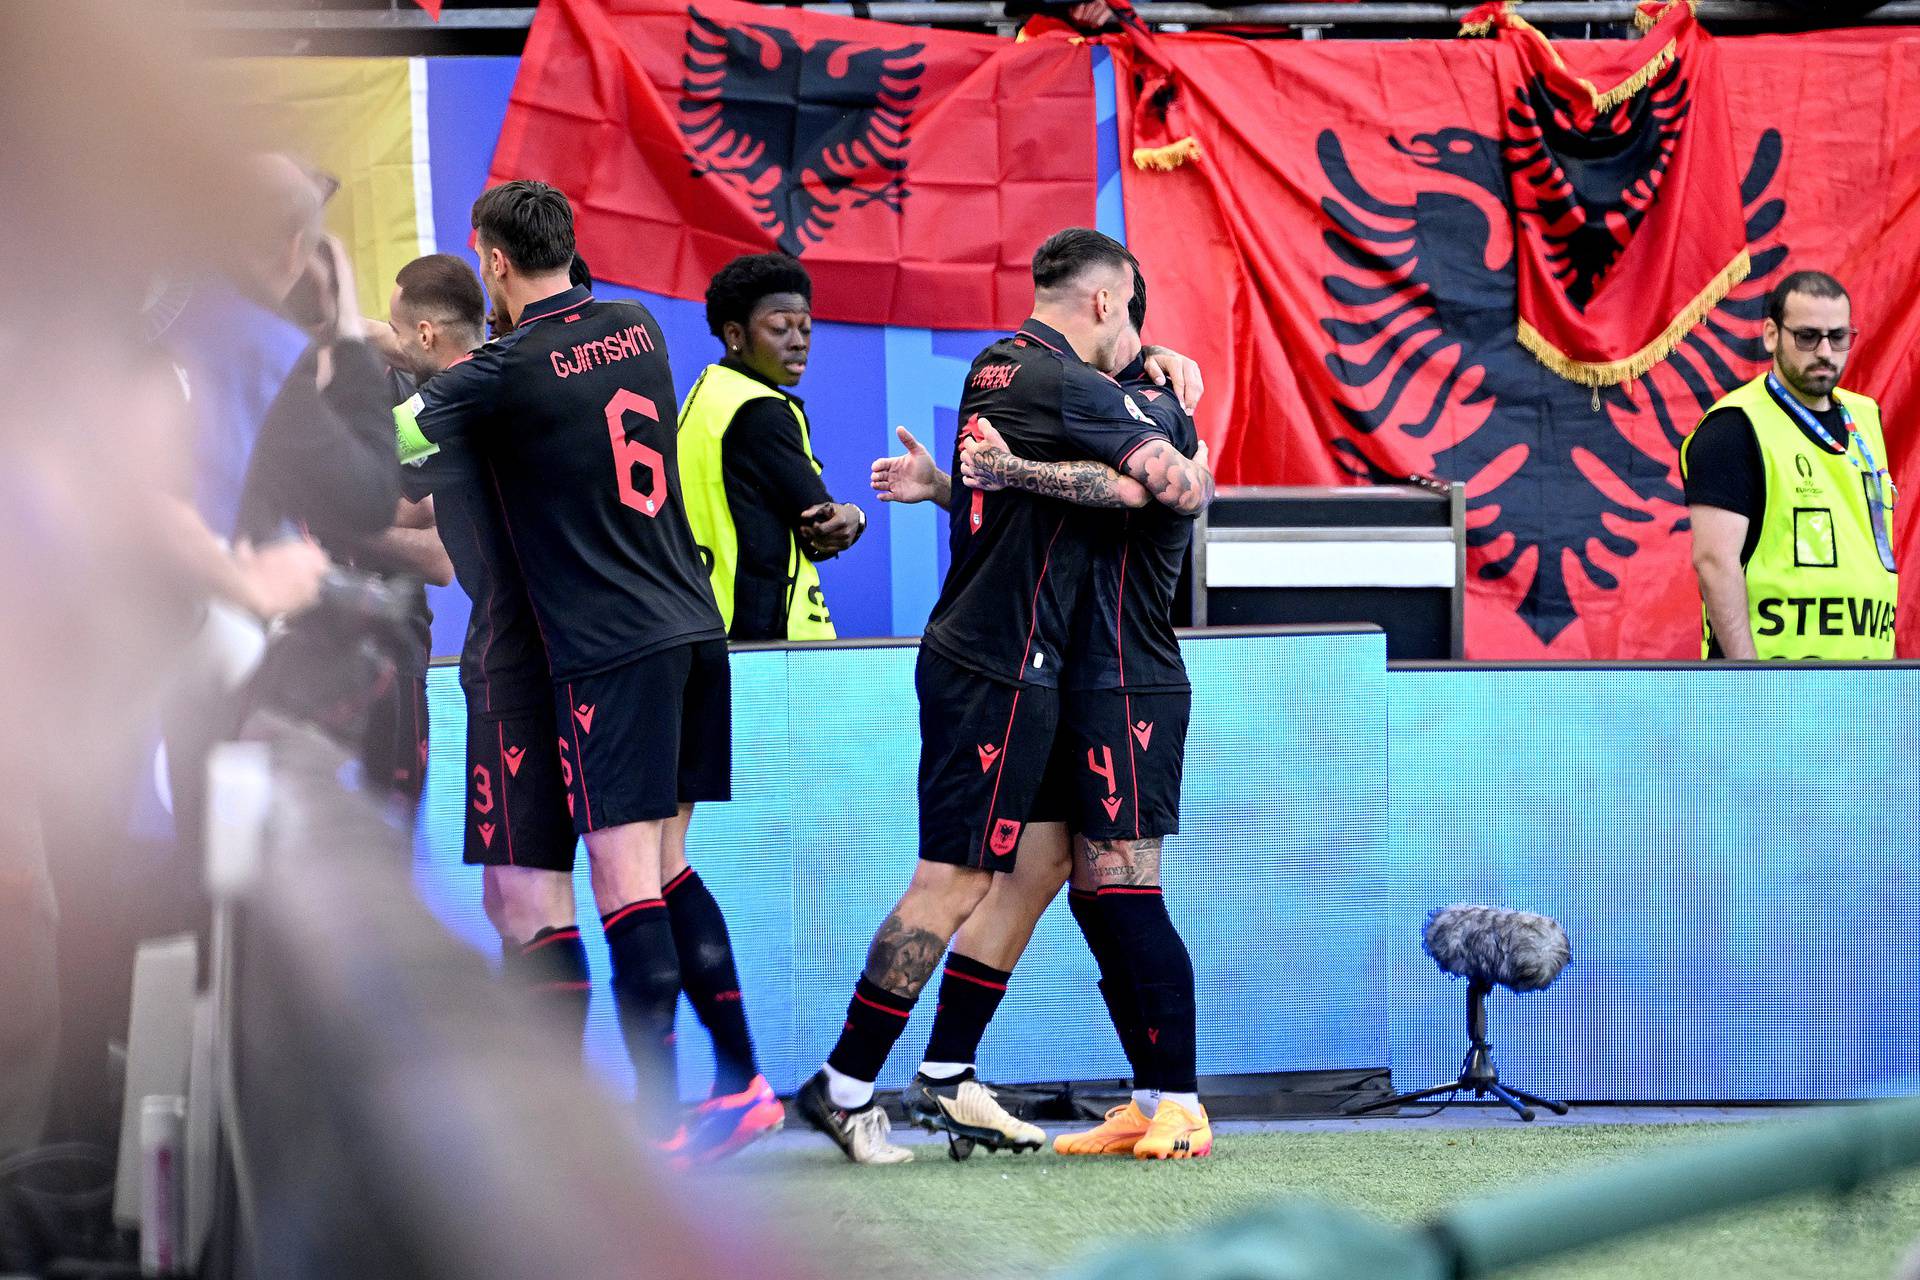 Hamburg: Albanija vodi u susretu  Hrvatske i Albanije u 2. kolu skupine B na Europskom prvenstvu